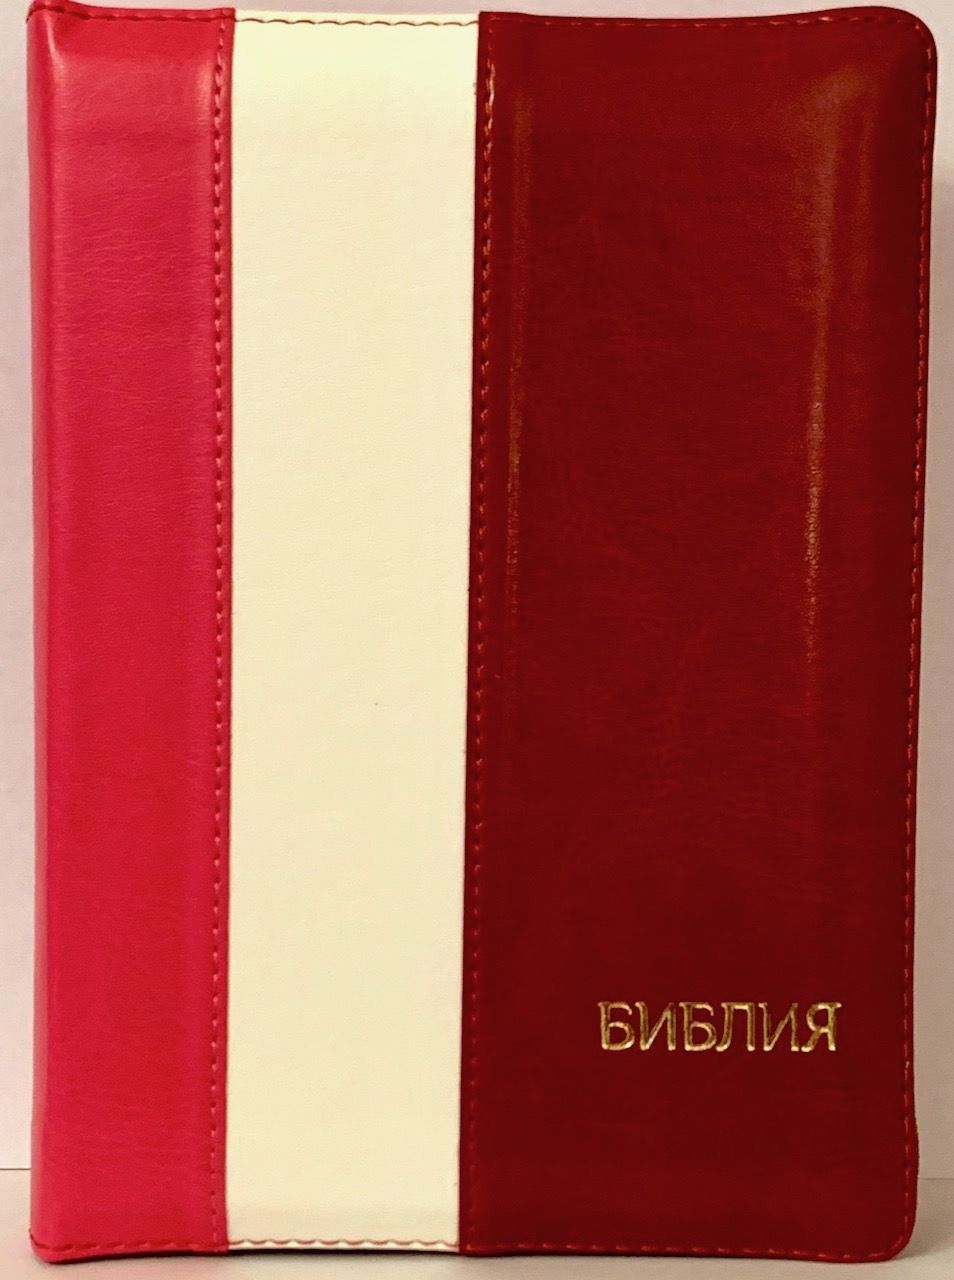 БИБЛИЯ 046DTzti формат, переплет из искусственной кожи на молнии с индексами, надпись золотом "Библия", цвет малина/белый/бордо вертикальный, средний формат, 132*182 мм, цветные карты, шрифт 12 кегель